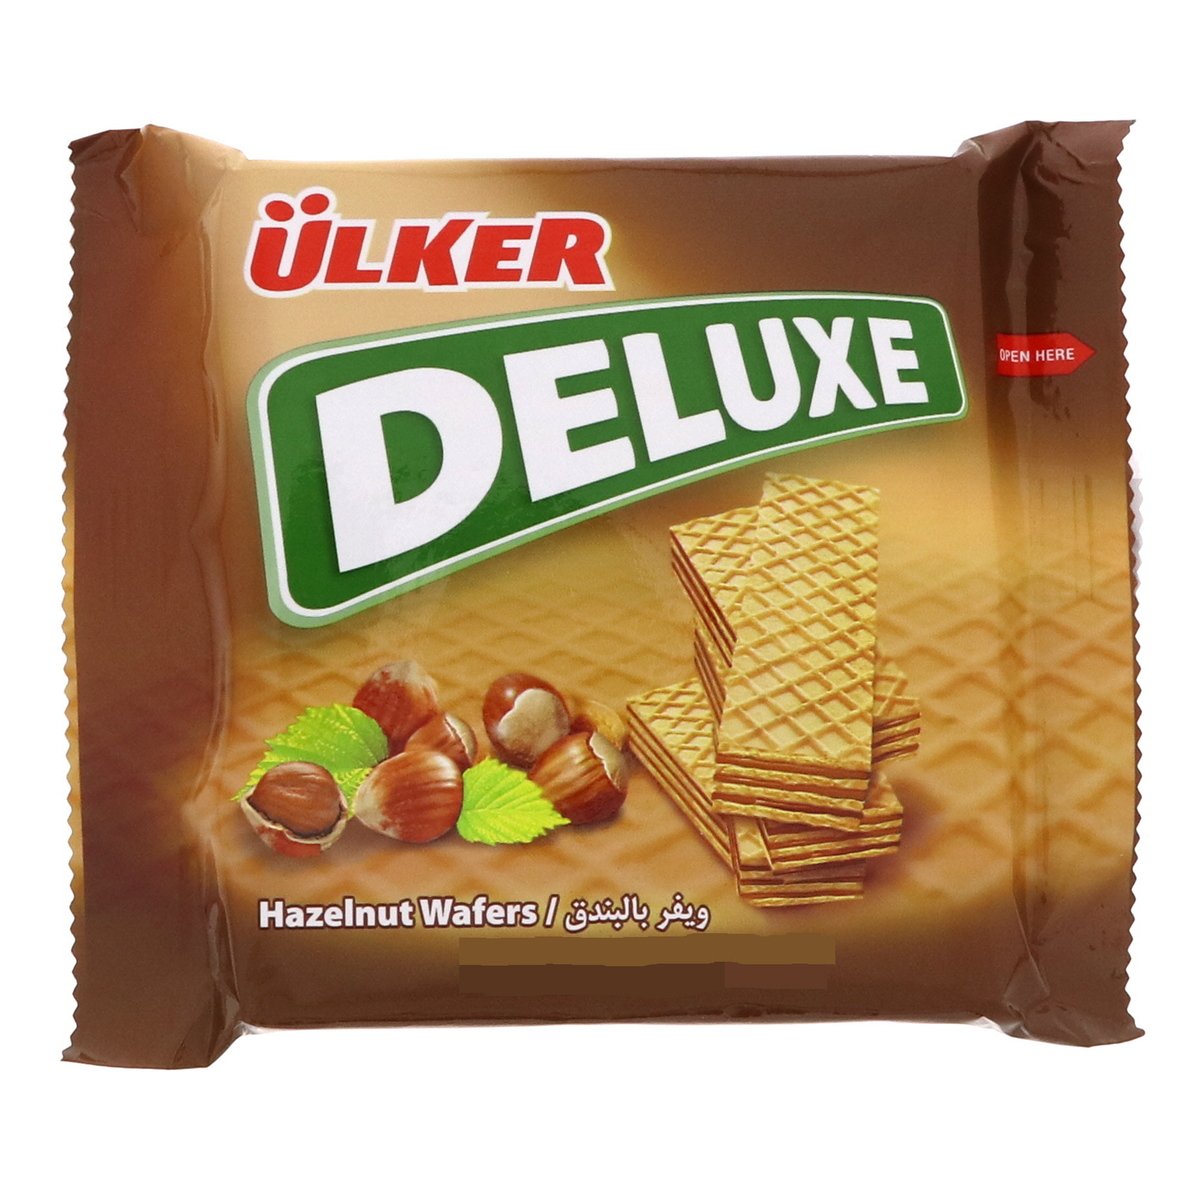 Ulker Deluxe Hazelnut Wafers 40g x 12 pcs